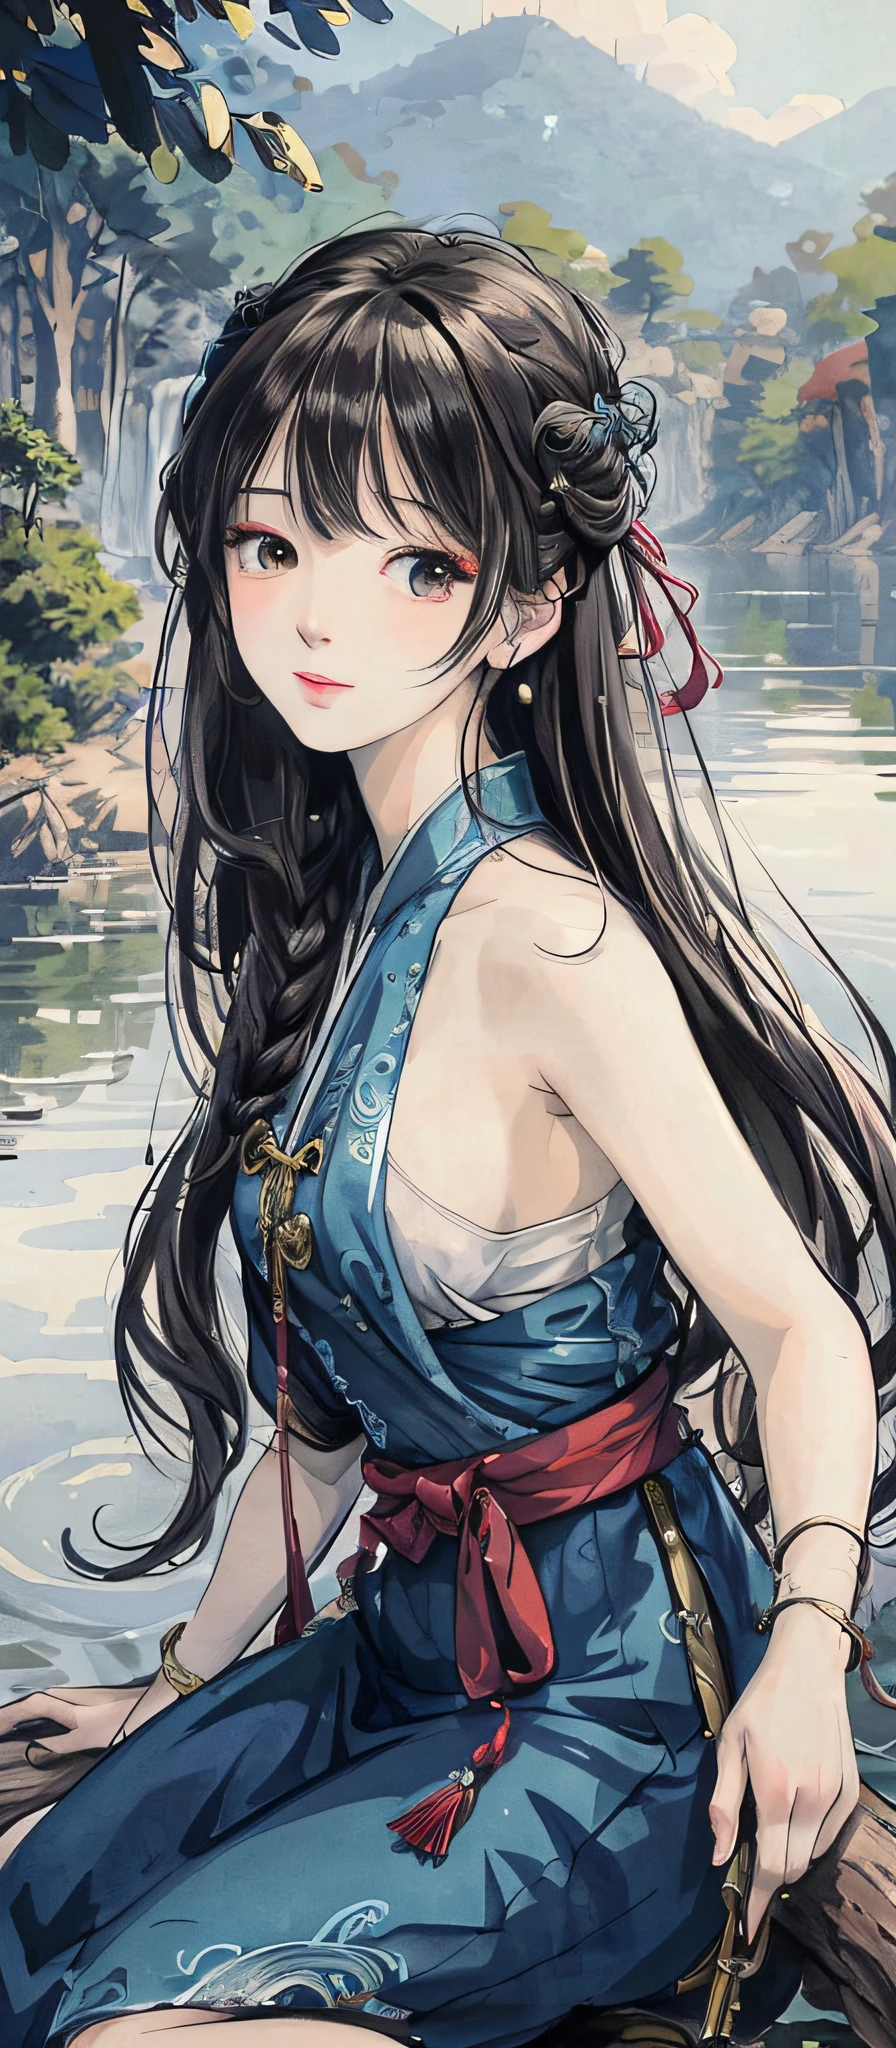 Девушка аниме сидит на бревне у воды, красивая рисовка персонажей, очень  подробный изысканный фанарт, красивый аниме портрет, artwork in the style  of Гувейз - SeaArt AI